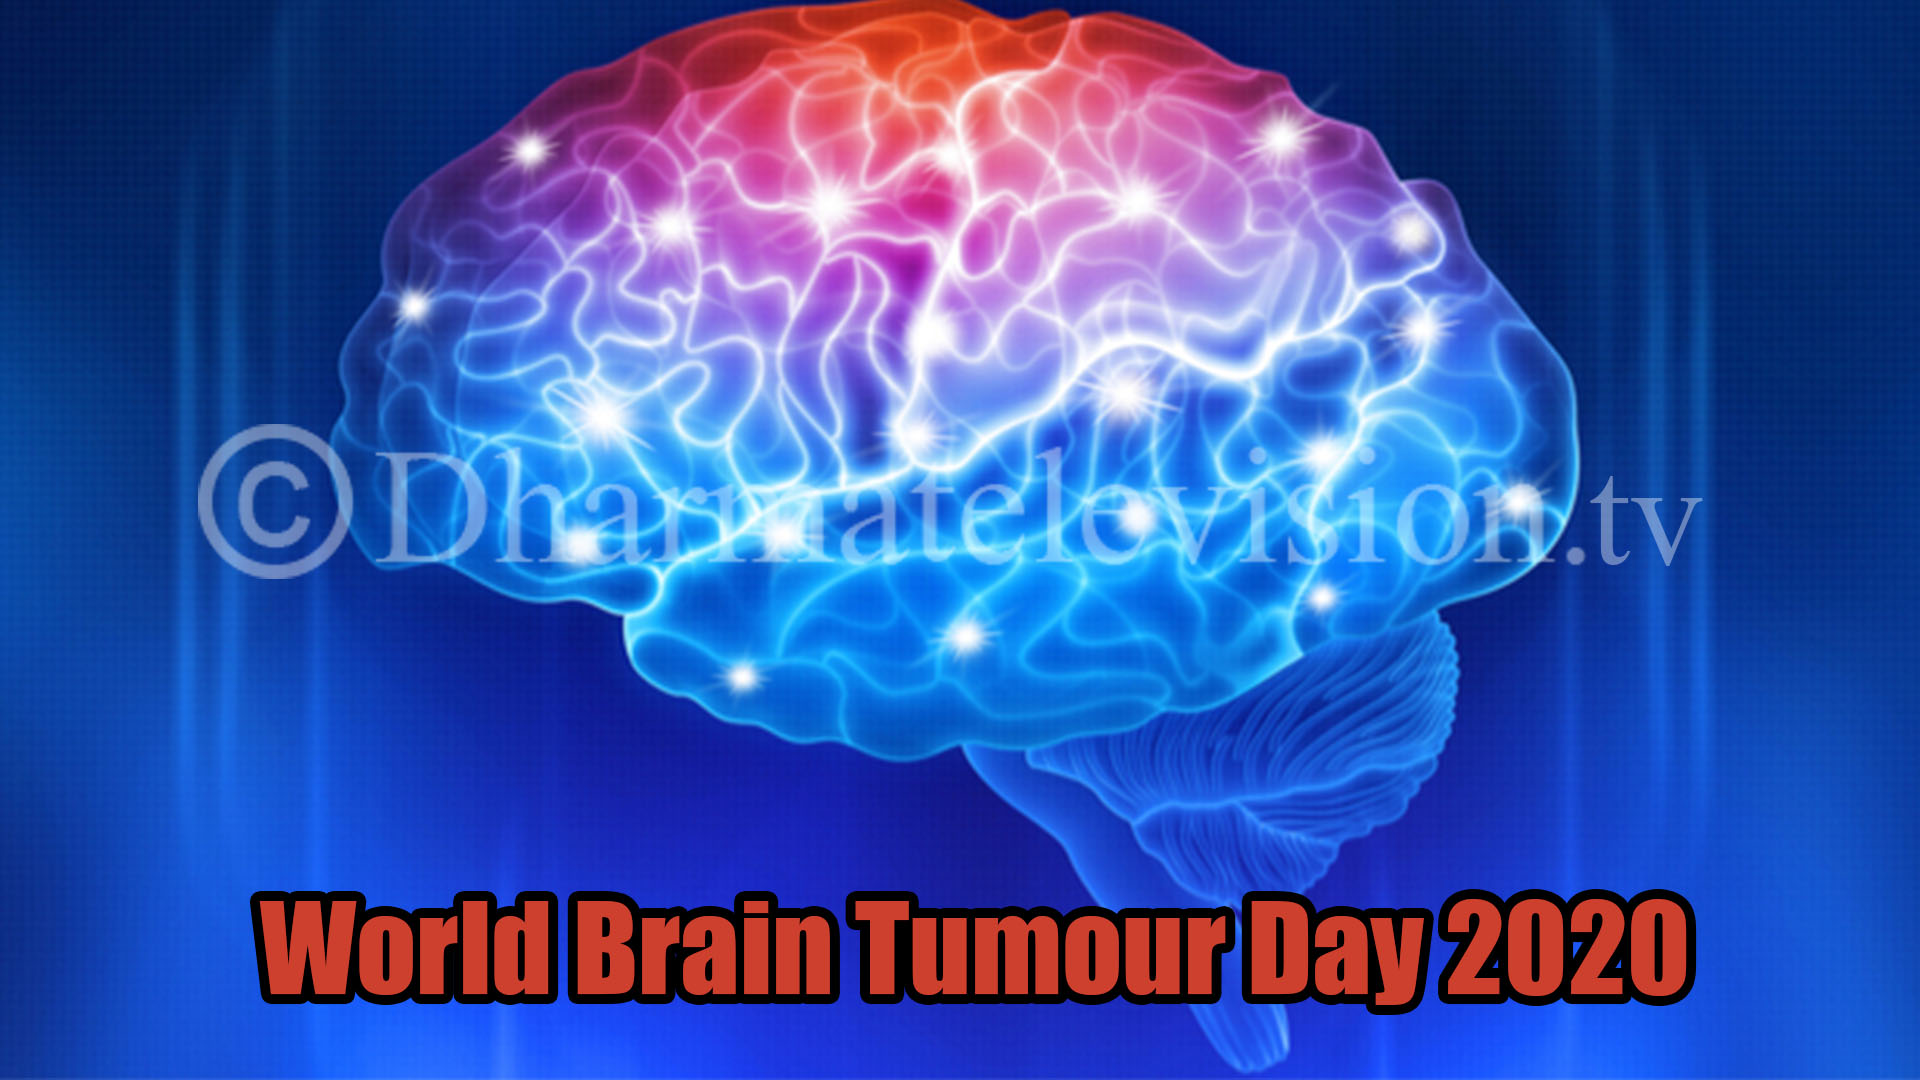 On World Brain Tumour Day 2020